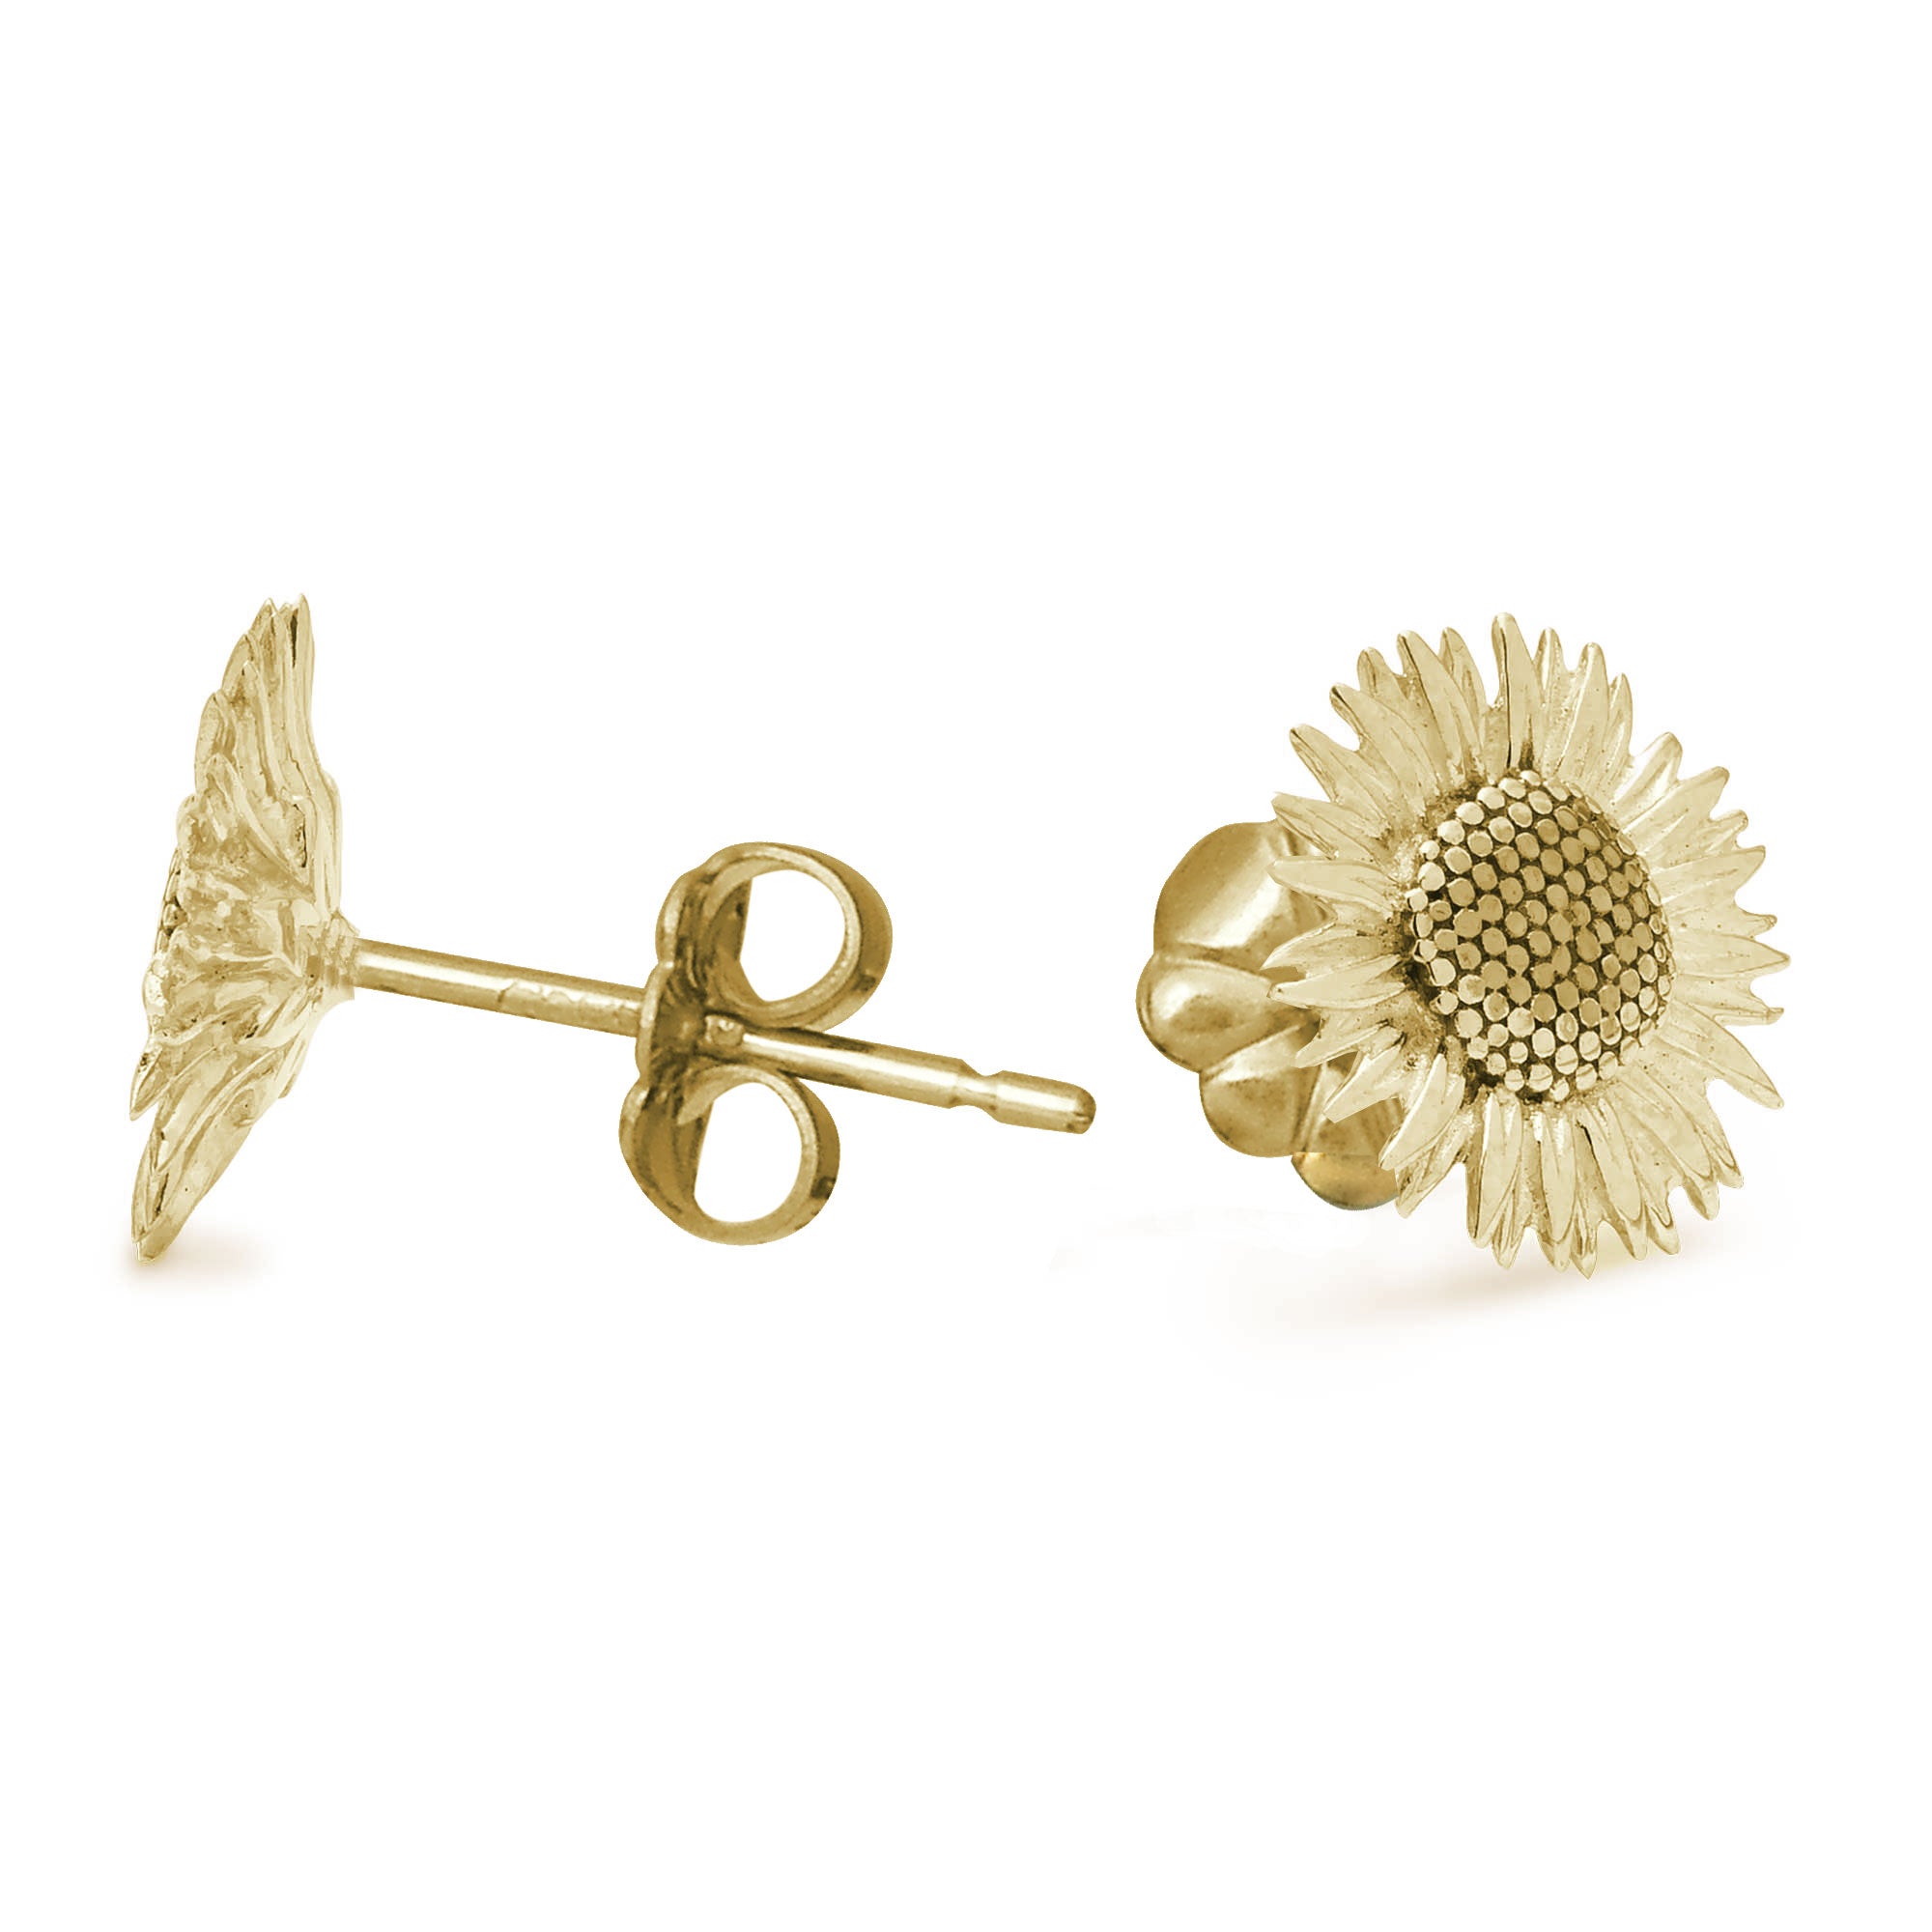 Solid Gold Sunflower Stud Earrings from Scarlett Jewellery